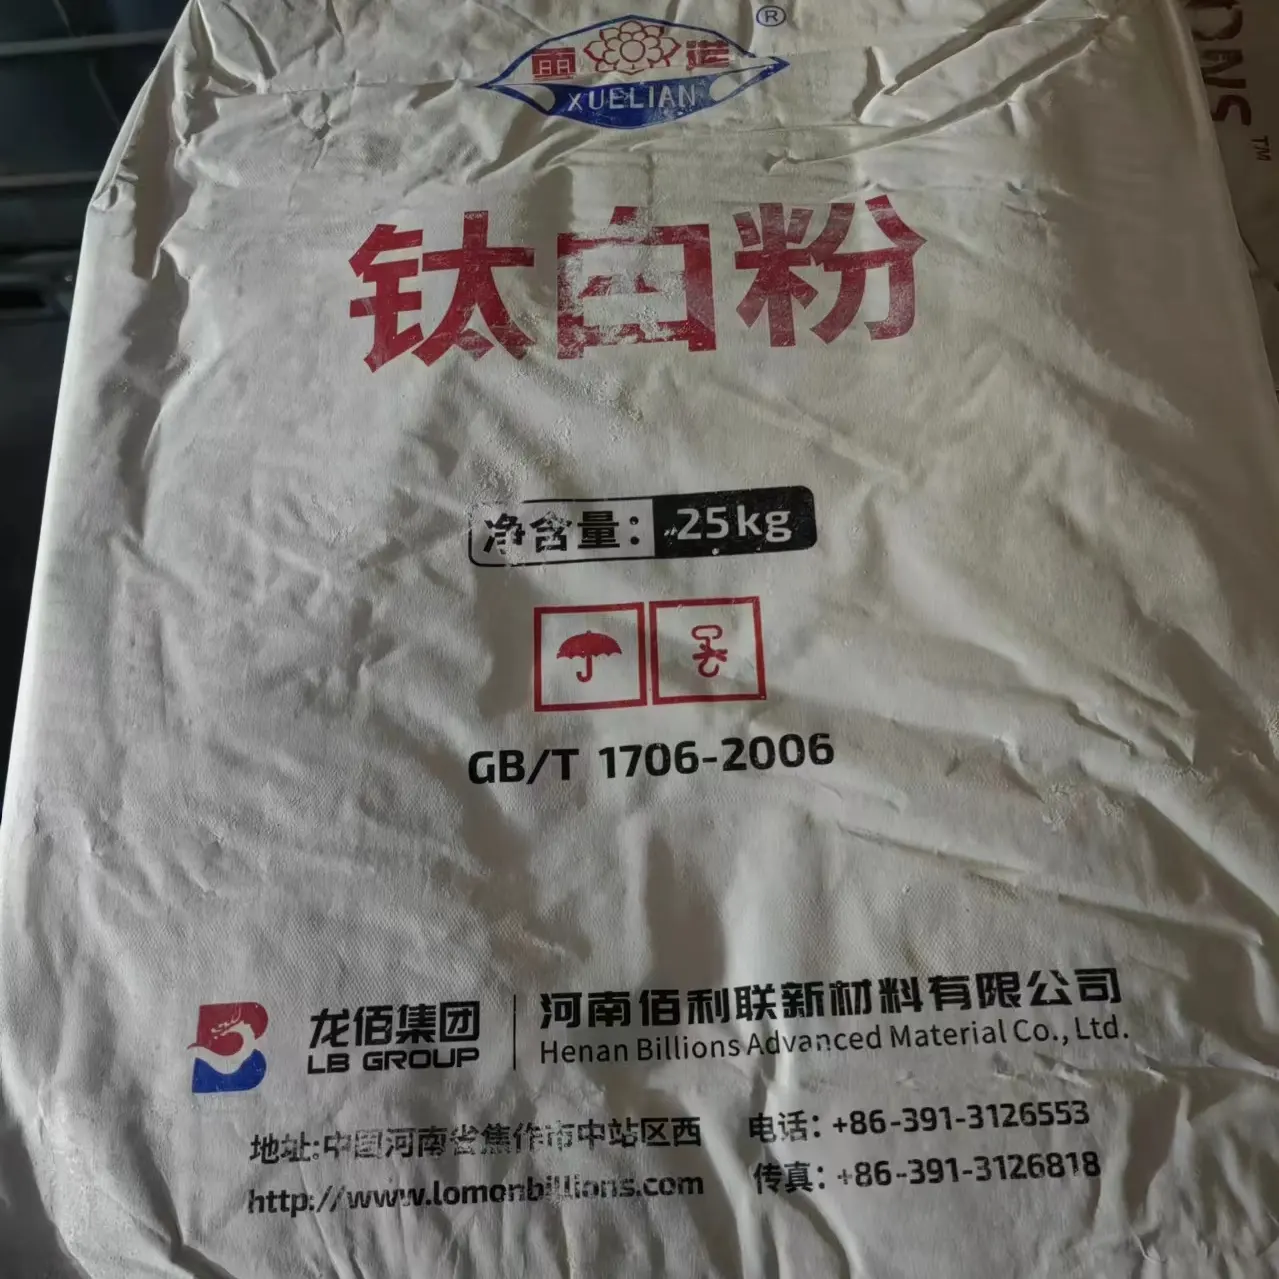 Lomon 이산화 티타늄 tio2 rutile 996 이산화 티타늄 안료 중국에서 만든 이산화 티타늄 895